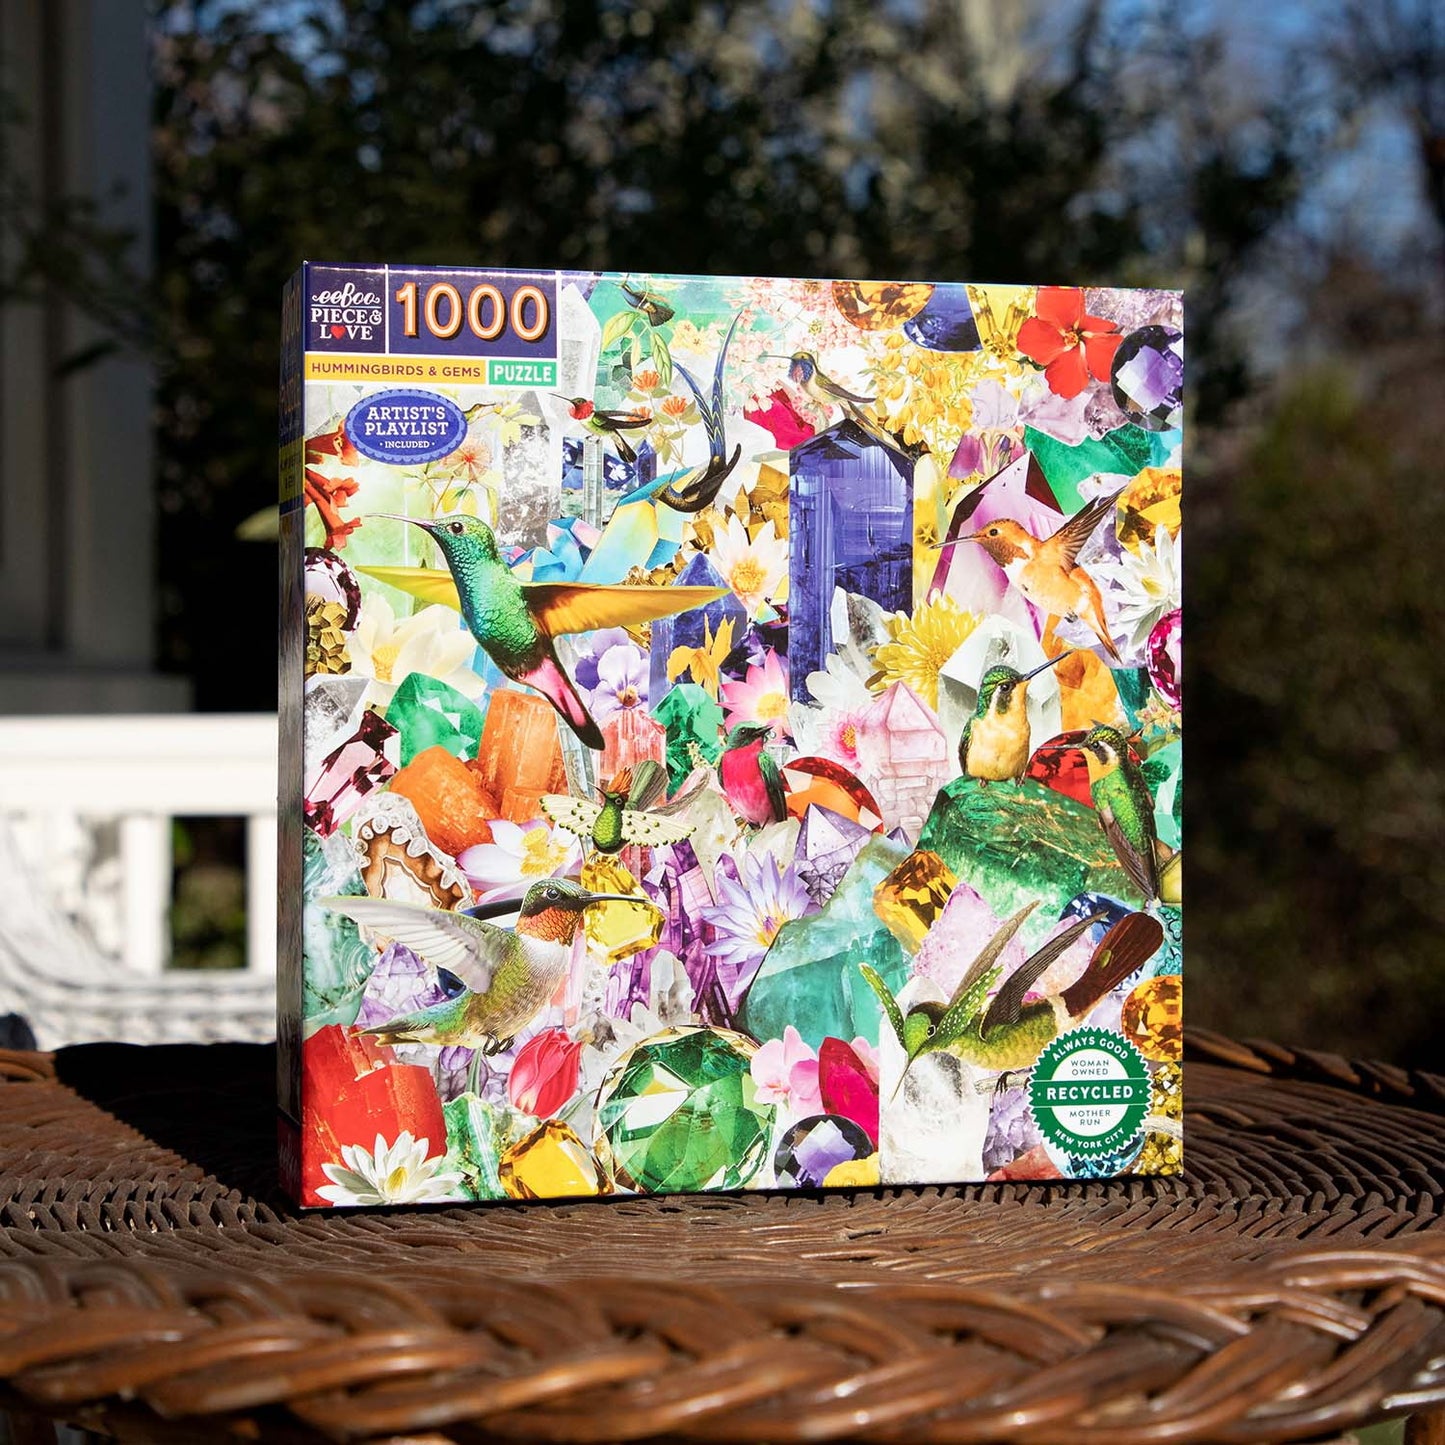 eeBoo Hummingbirds & Gems 1000 Piece Puzzle